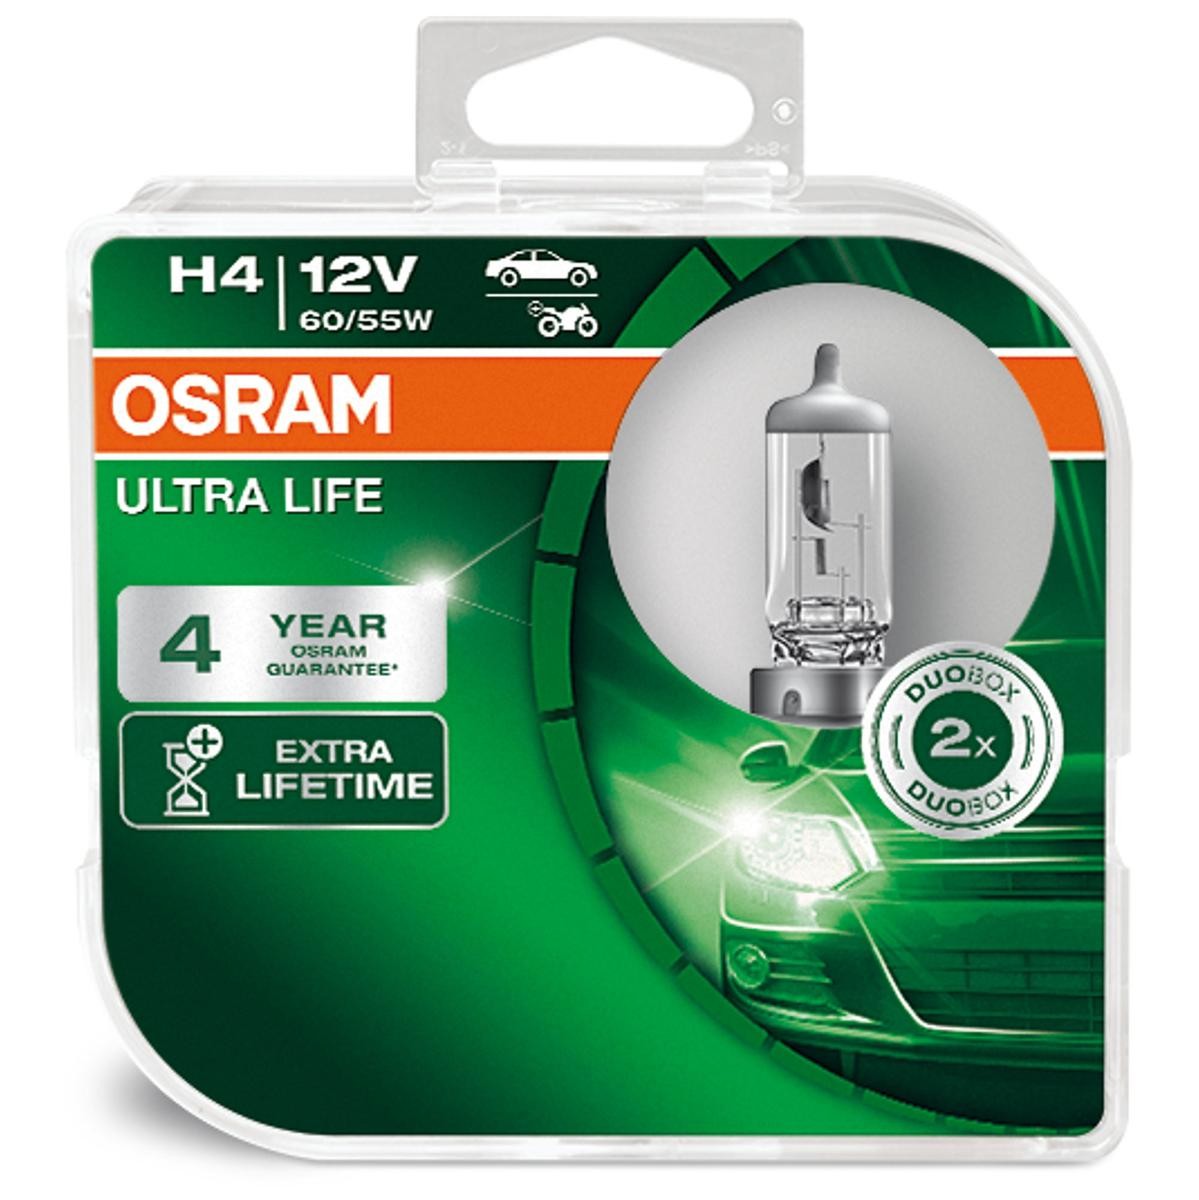 64193ULT-HCB OSRAM ULTRA LIFE H4 12V 60/55W P43t, 3200K, Halogène Ampoule,  projecteur longue portée